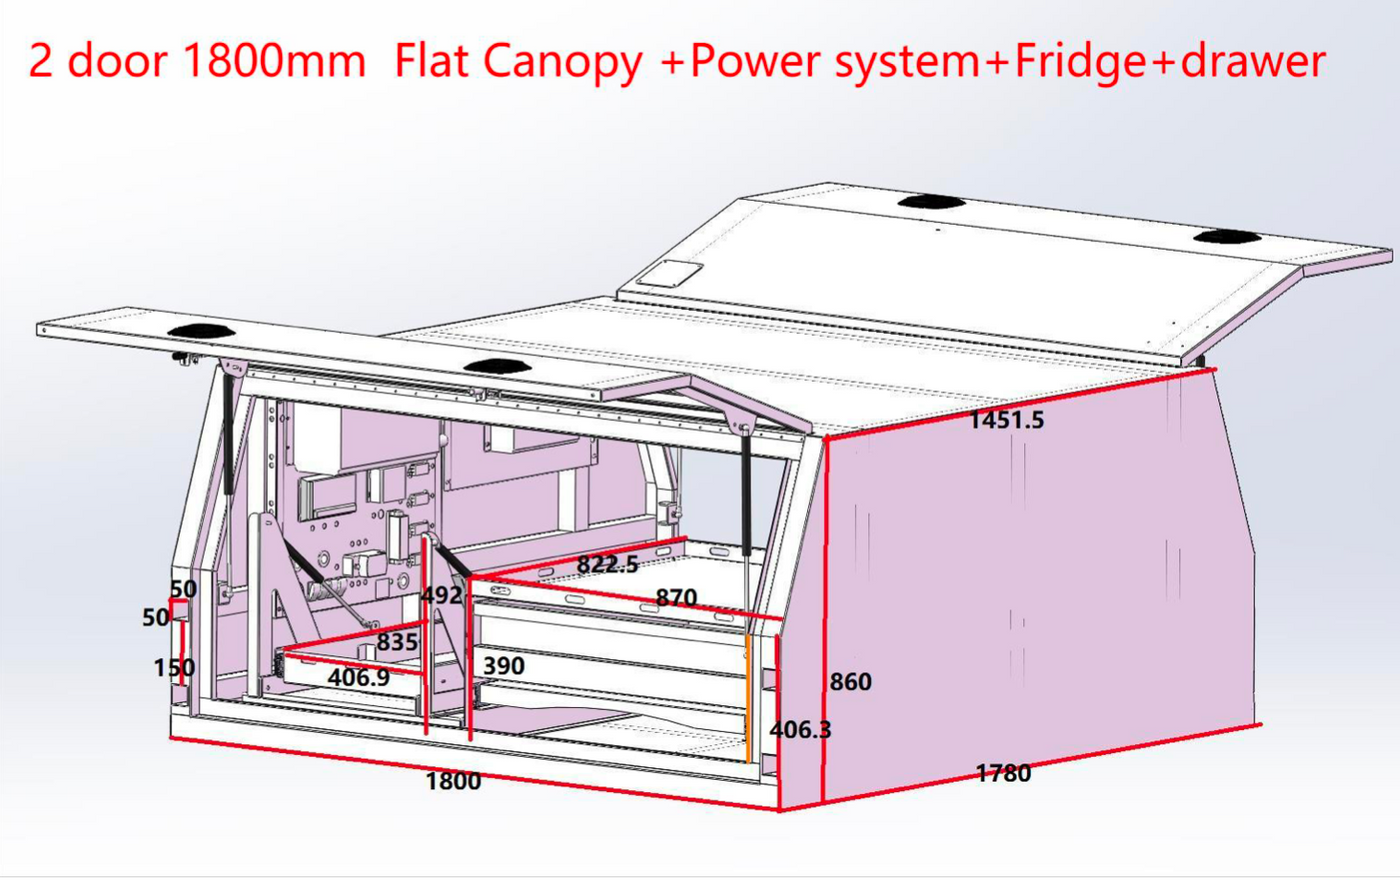 Tourer 1800 Raw Canopy + Power Supply (Pre-Order) - OZI4X4 PTY LTD